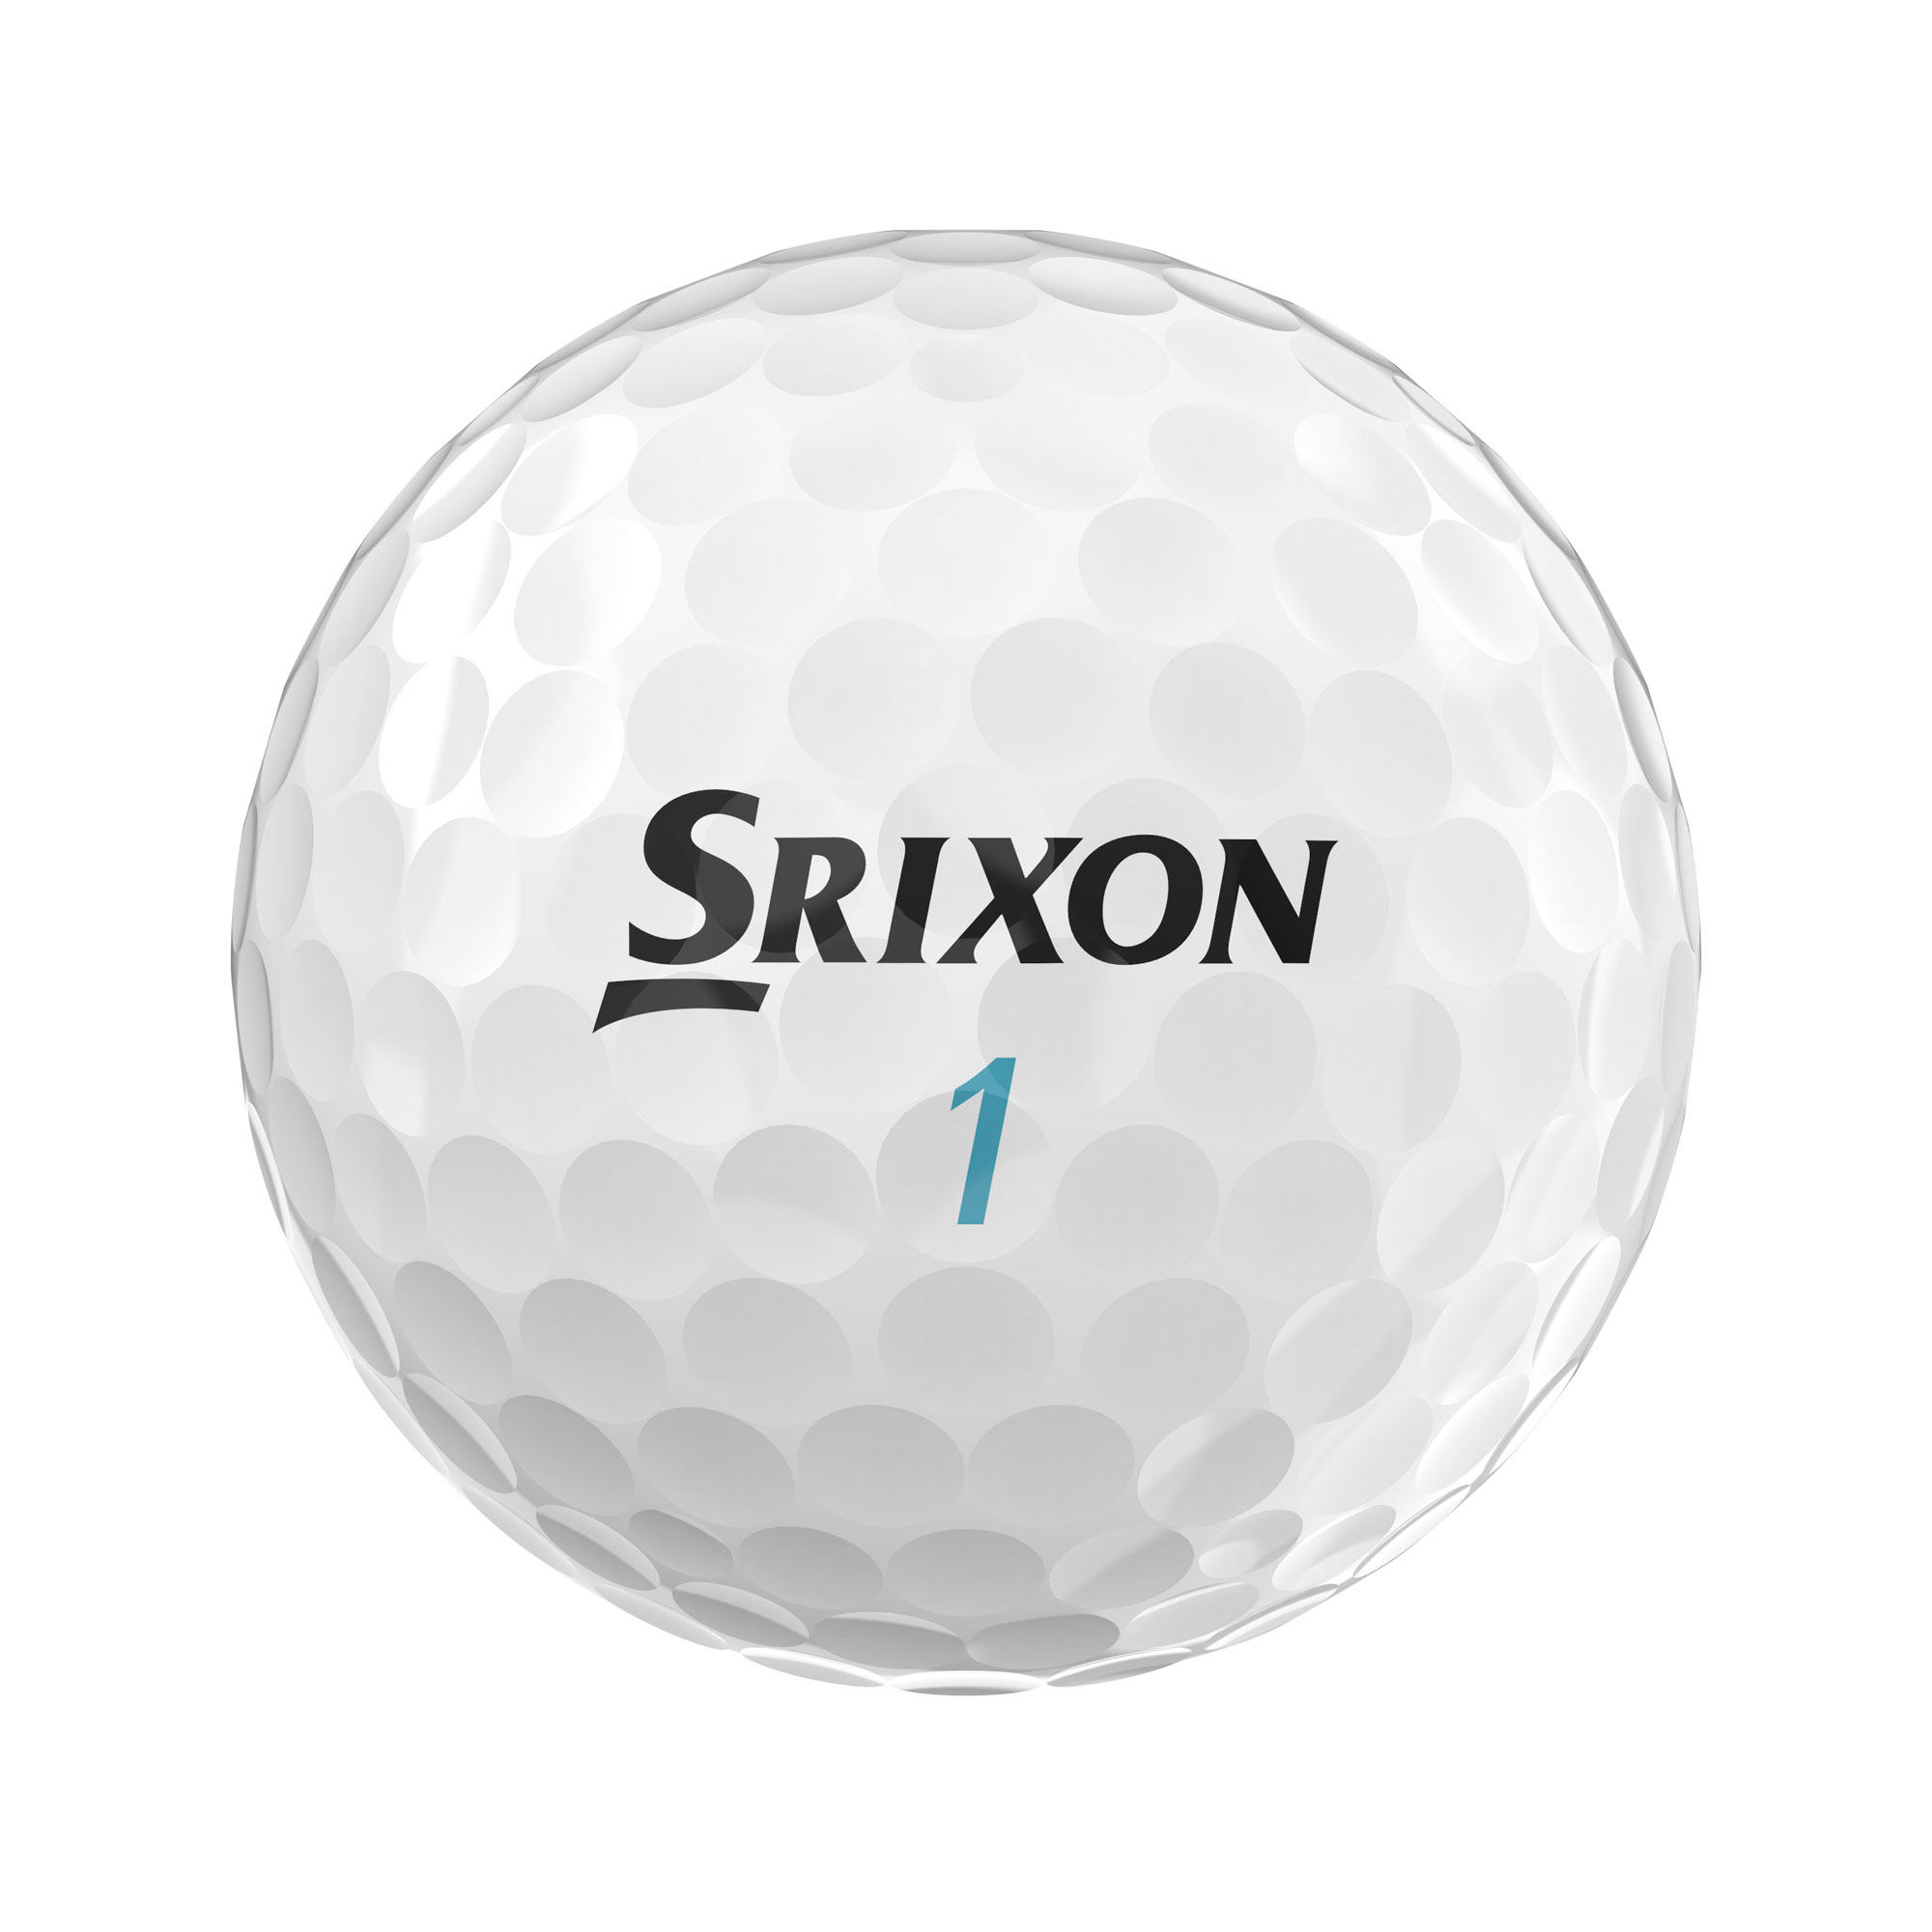 Srixon UltiSoft Golfbälle bedruckt, weiss (VPE à 12 Bälle)